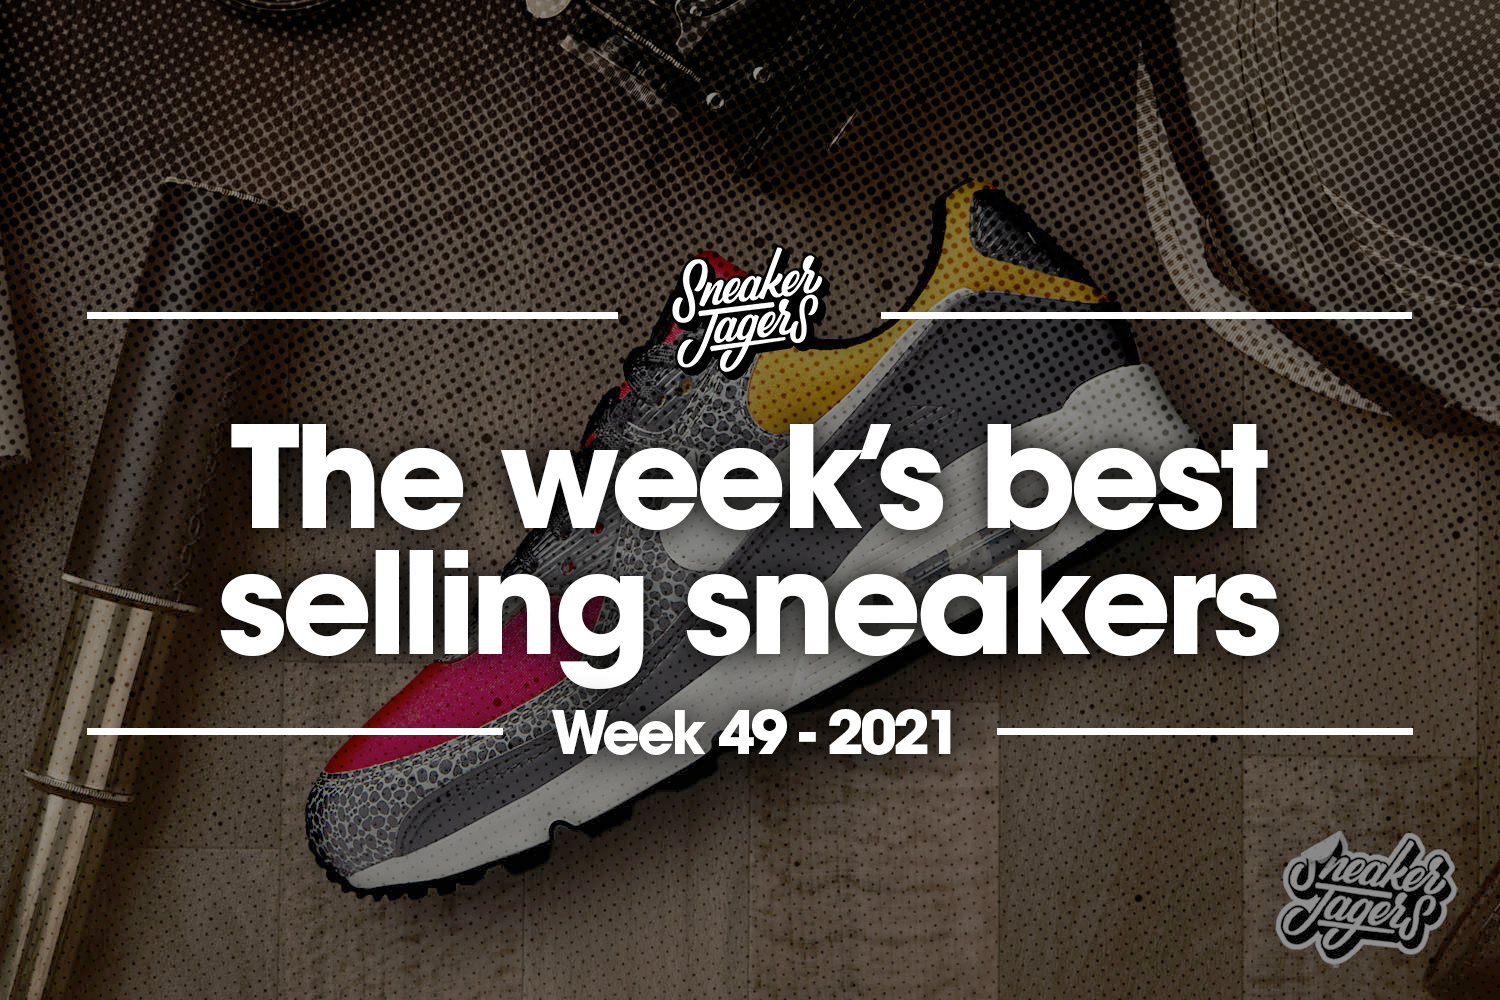 De 5 bestverkochte sneakers van week 49